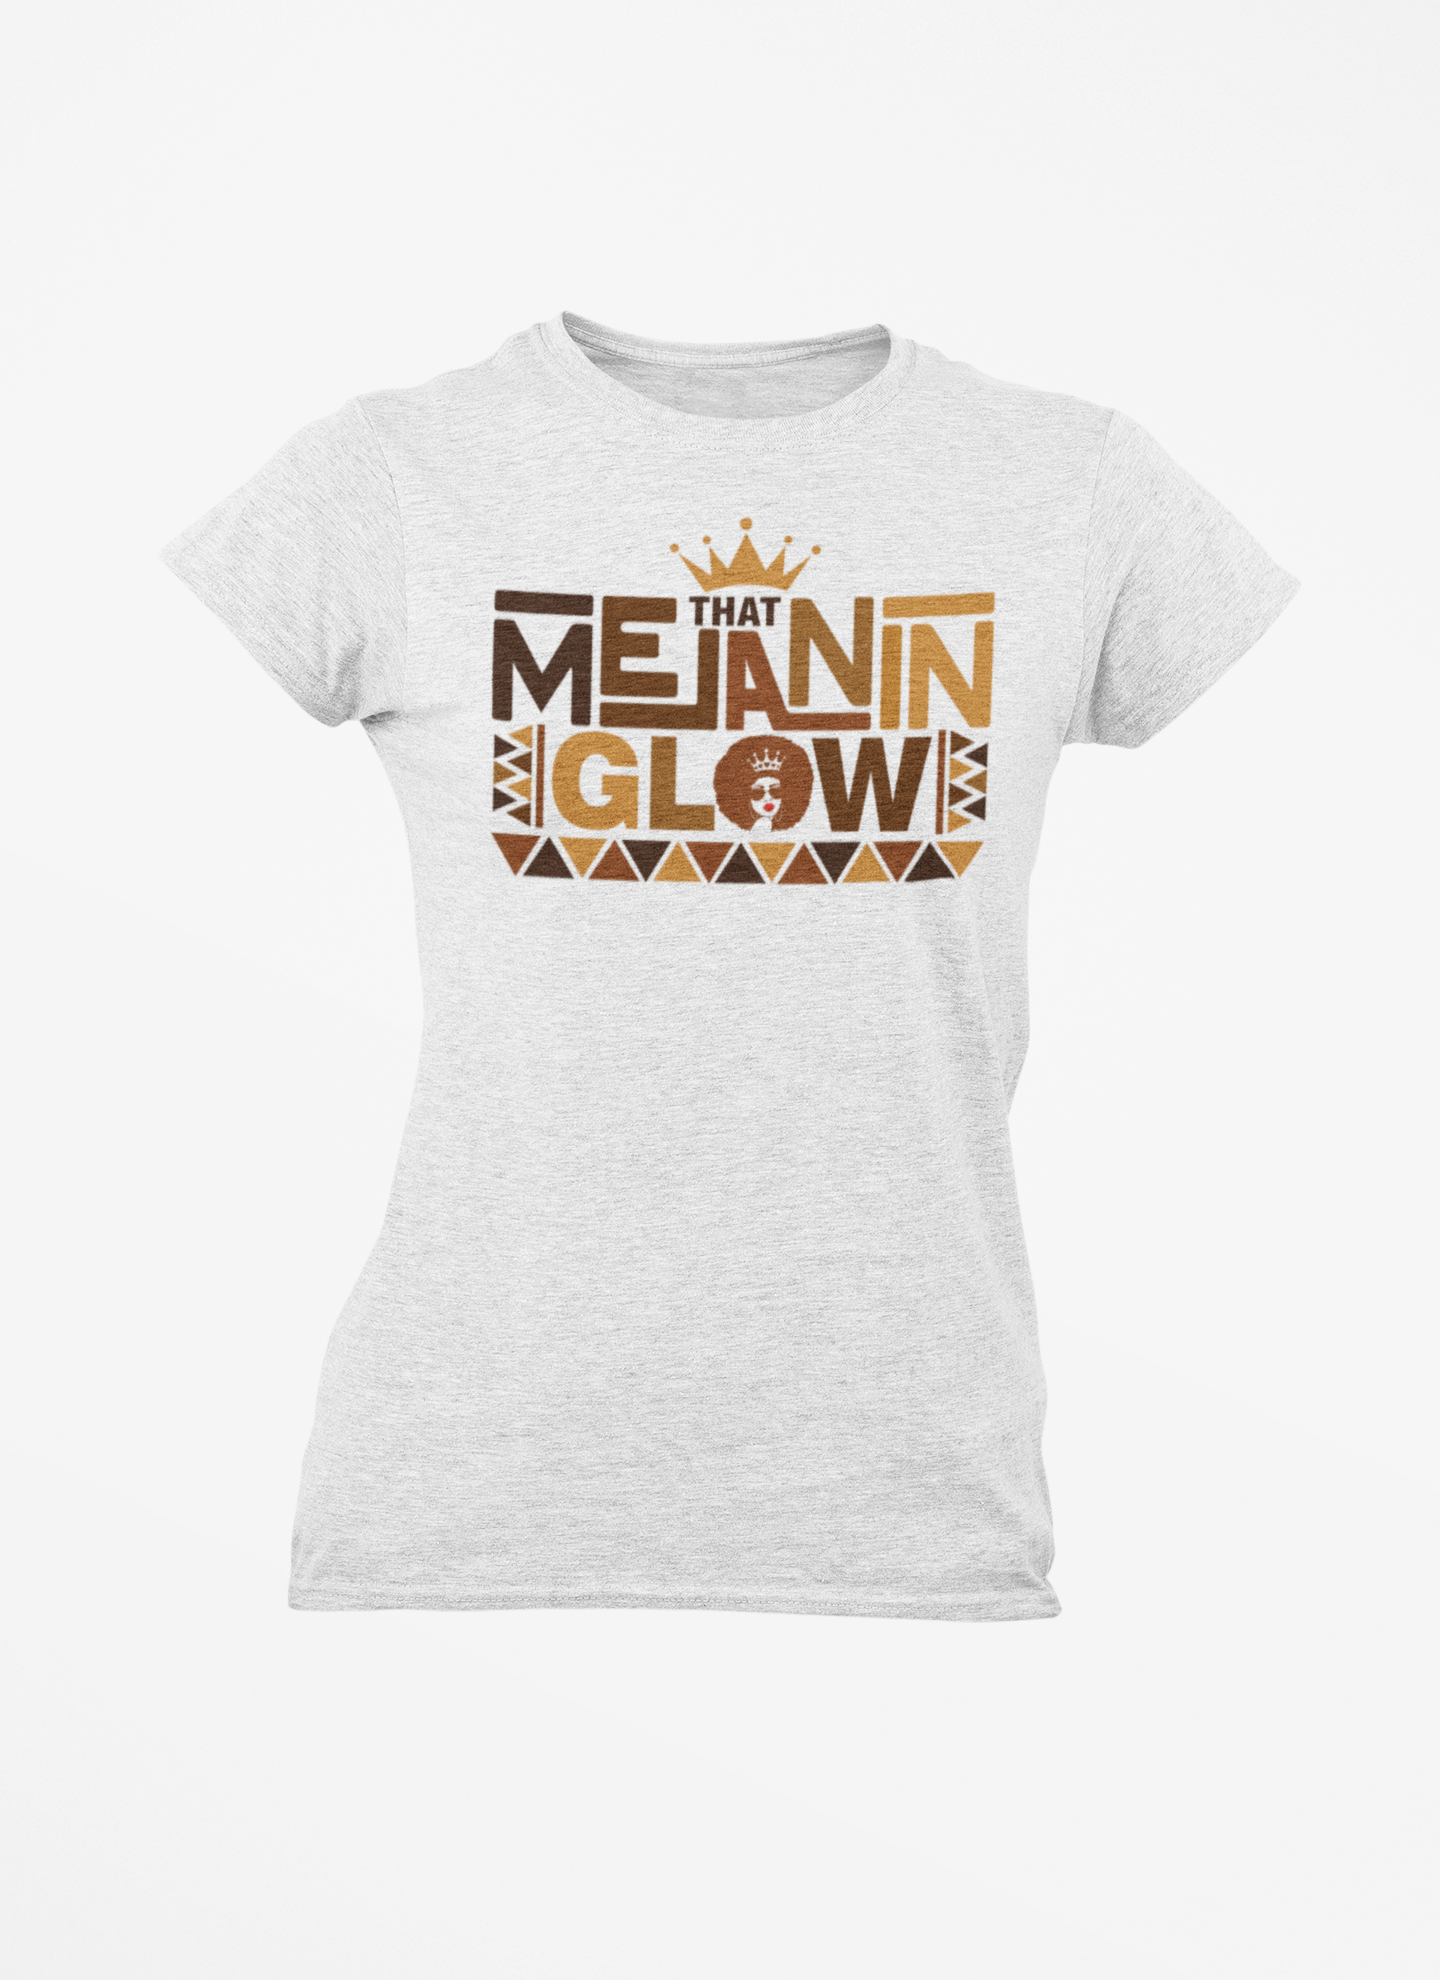 Women's Melanin Glow T-Shirt